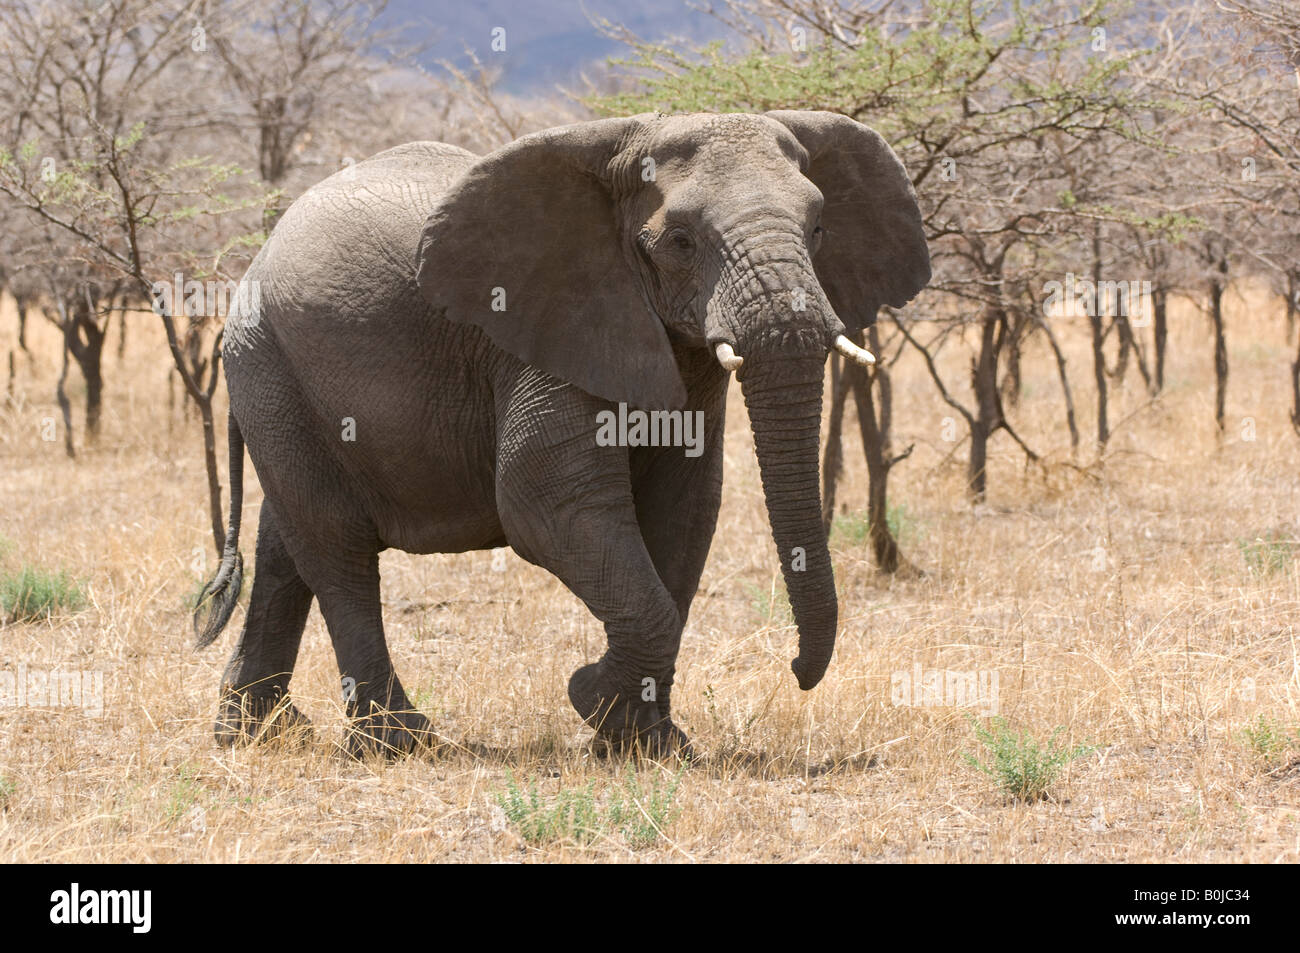 Elephant (Loxodonta africana) in savannah Stock Photo